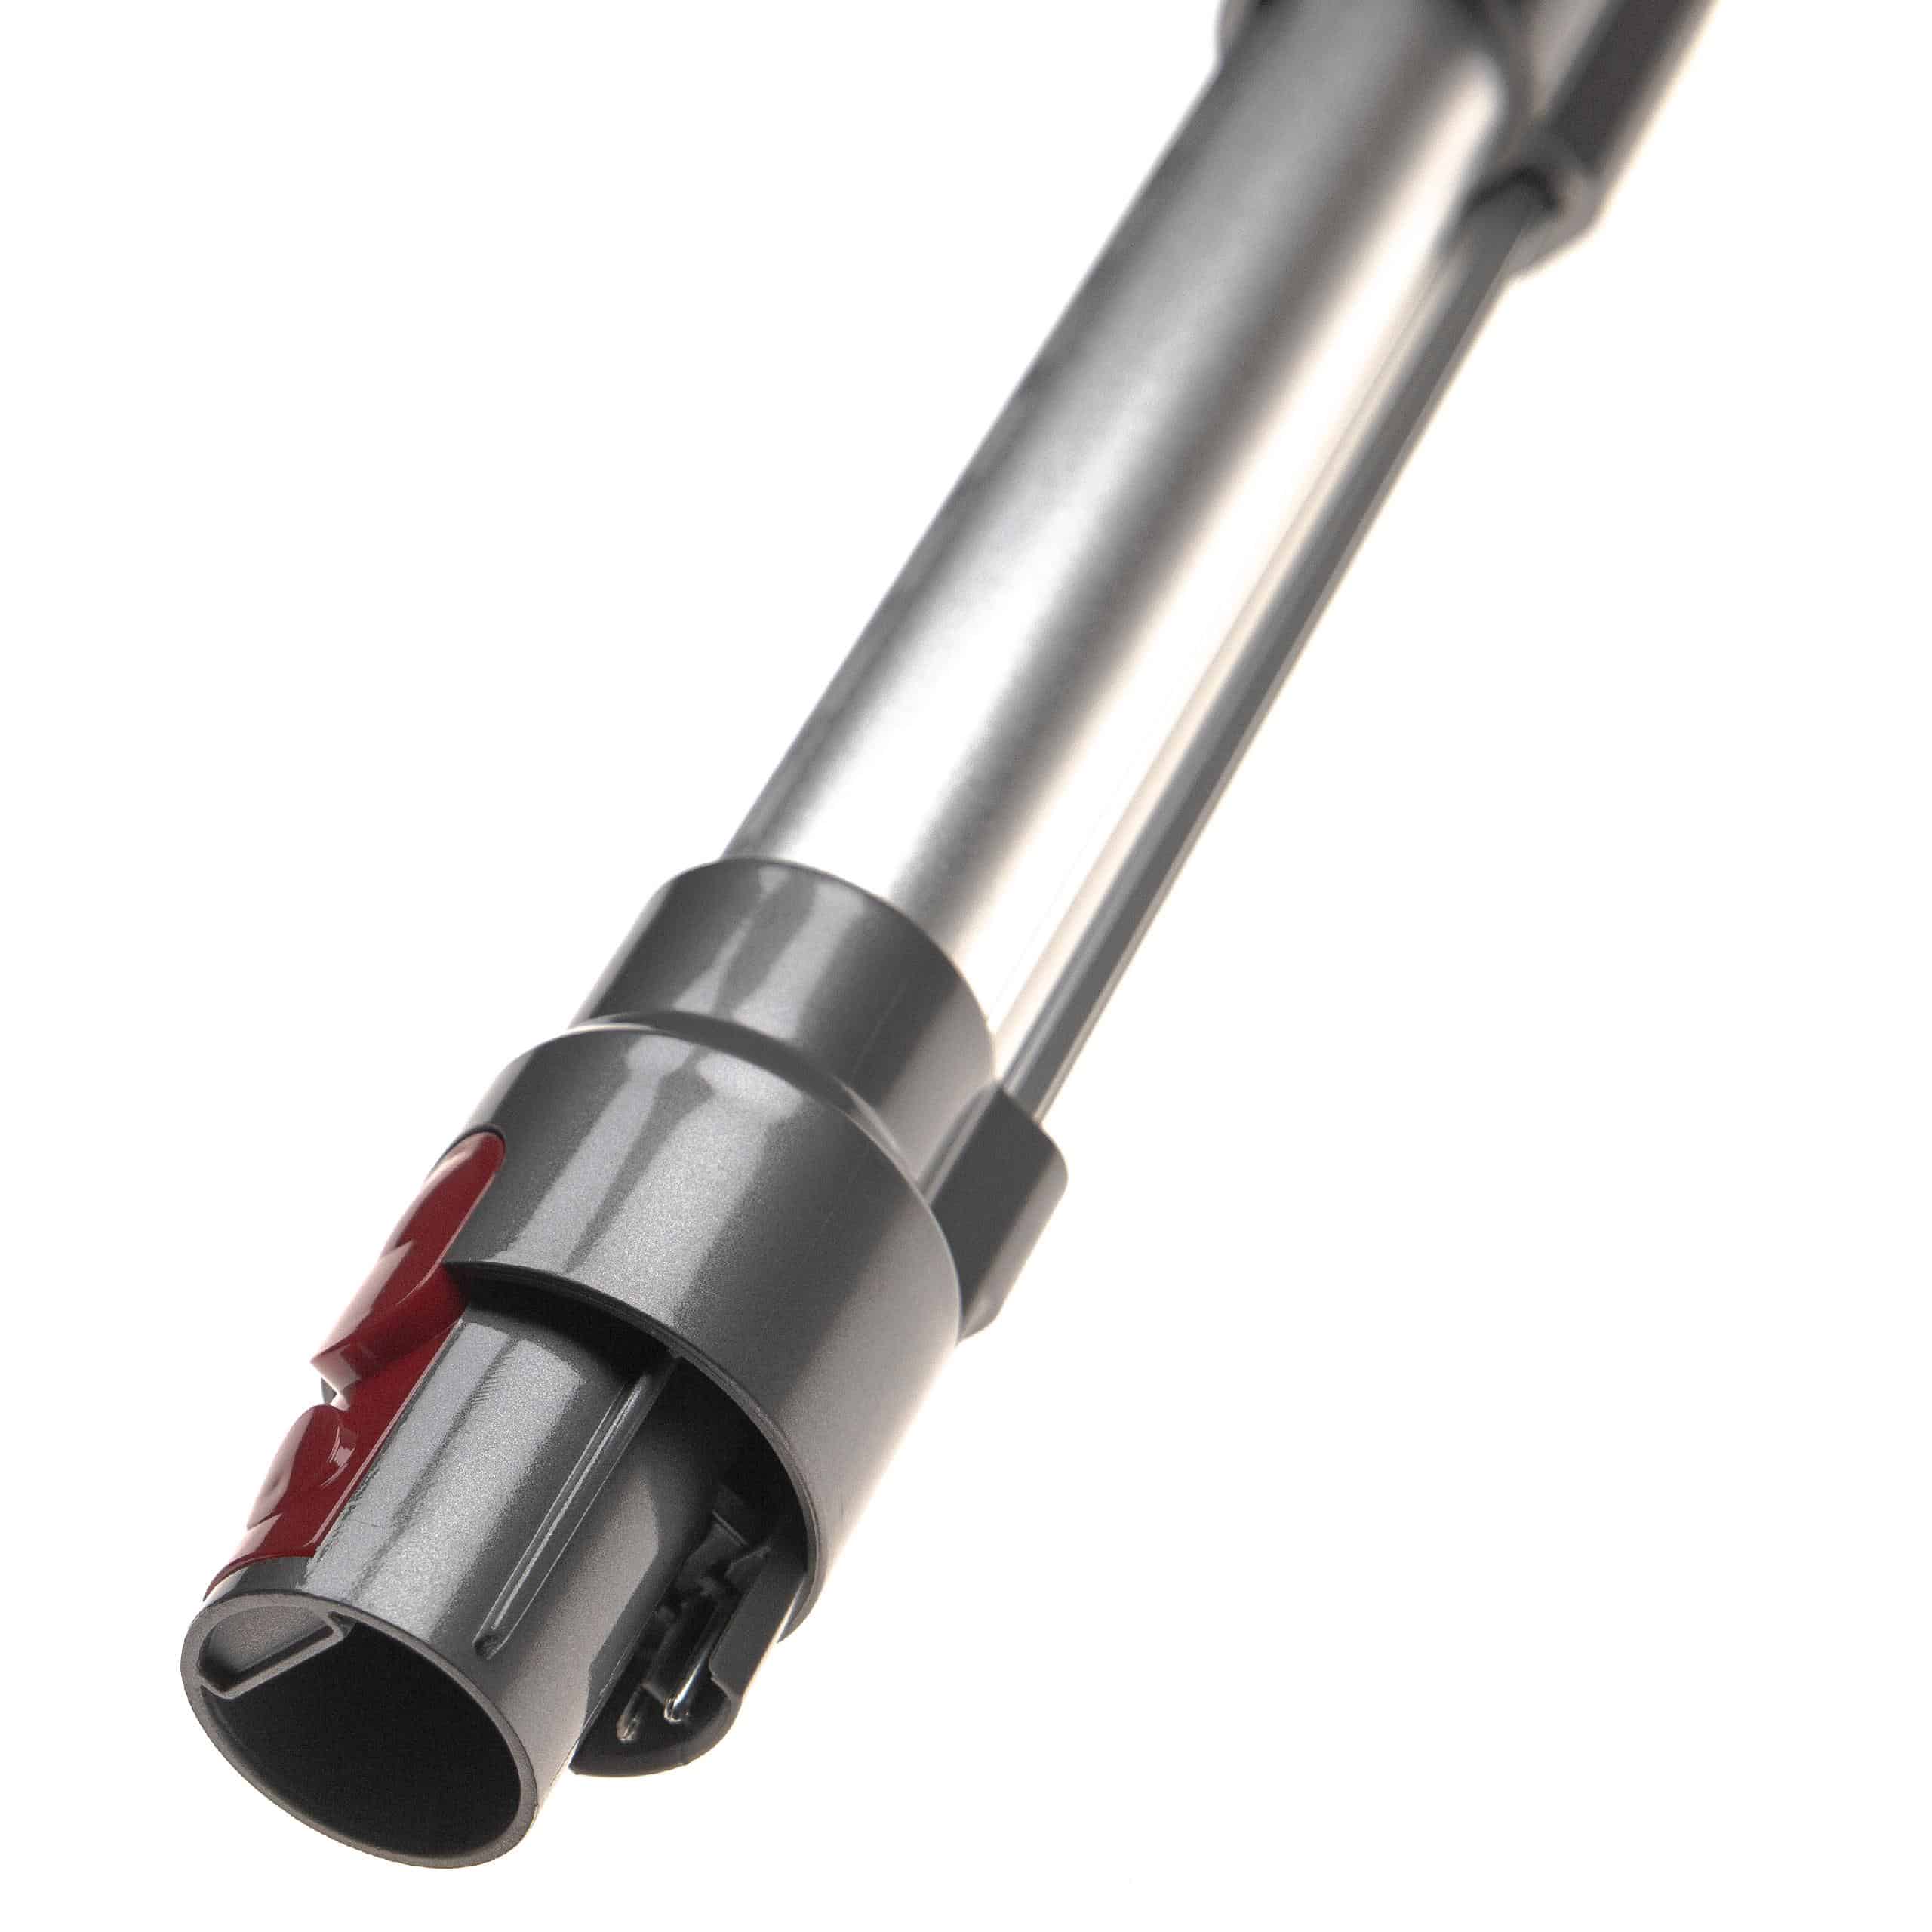 Tube for Dyson V10, V11, V15, V7, V8 vacuum cleaner - Length: 44.5 - 66.5 cm, silver